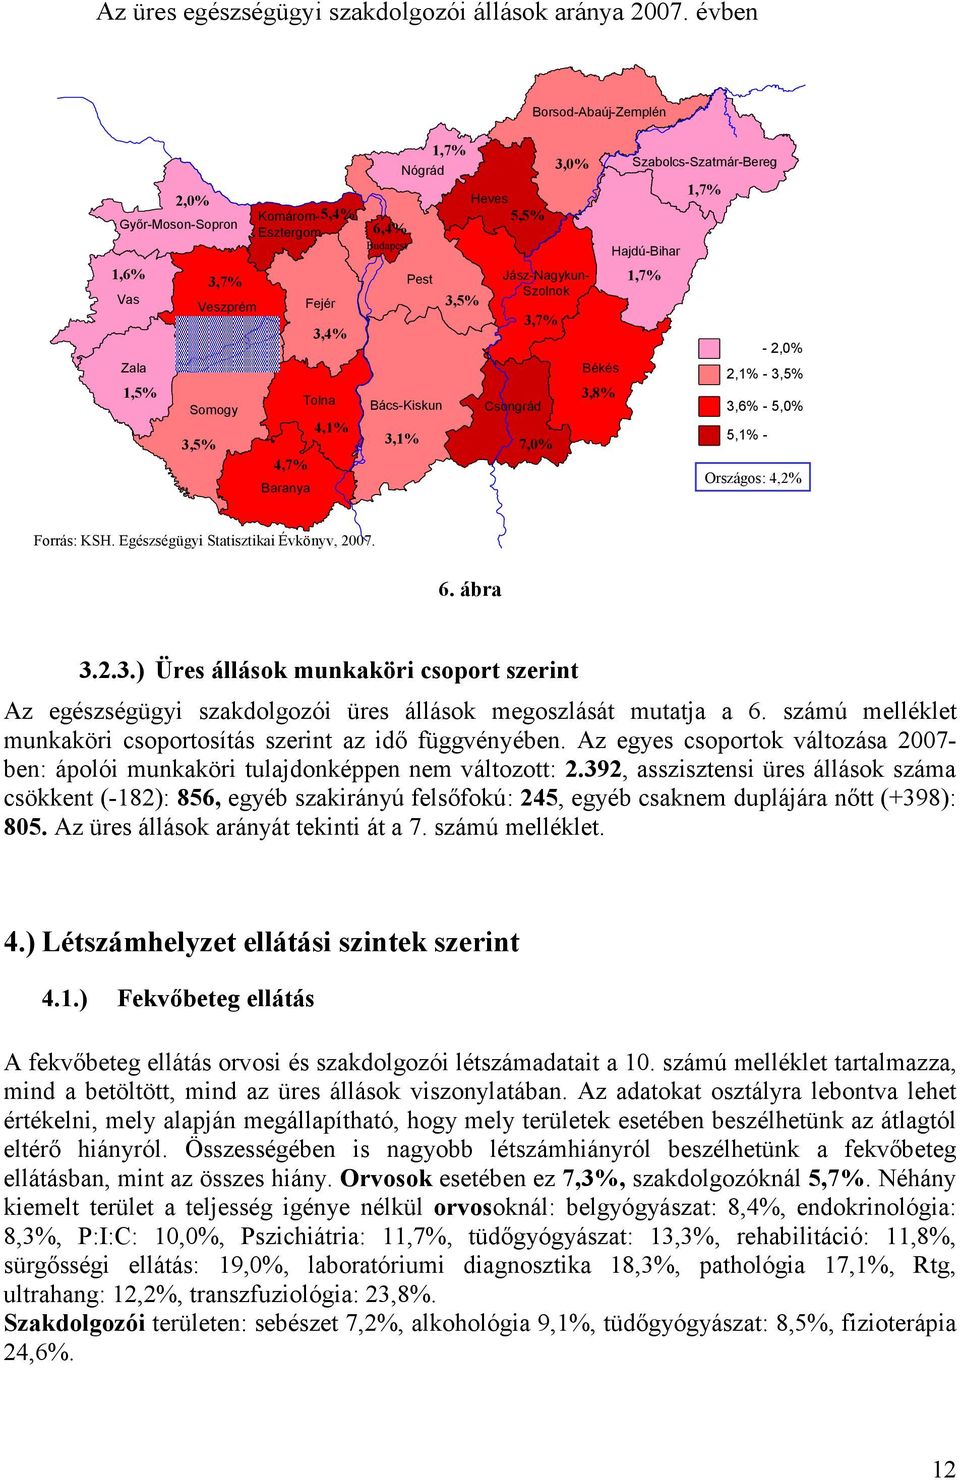 Csongrád Borsod-Abaúj-Zemplén Jász-Nagykun- Szolnok 3,7% 7,0% 3,0% Békés 3,8% Szabolcs-Szatmár-Bereg Hajdú-Bihar 1,7% 1,7% - 2,0% 2,1% - 3,5% 3,6% - 5,0% 5,1% - Országos: 4,2% Forrás: KSH.